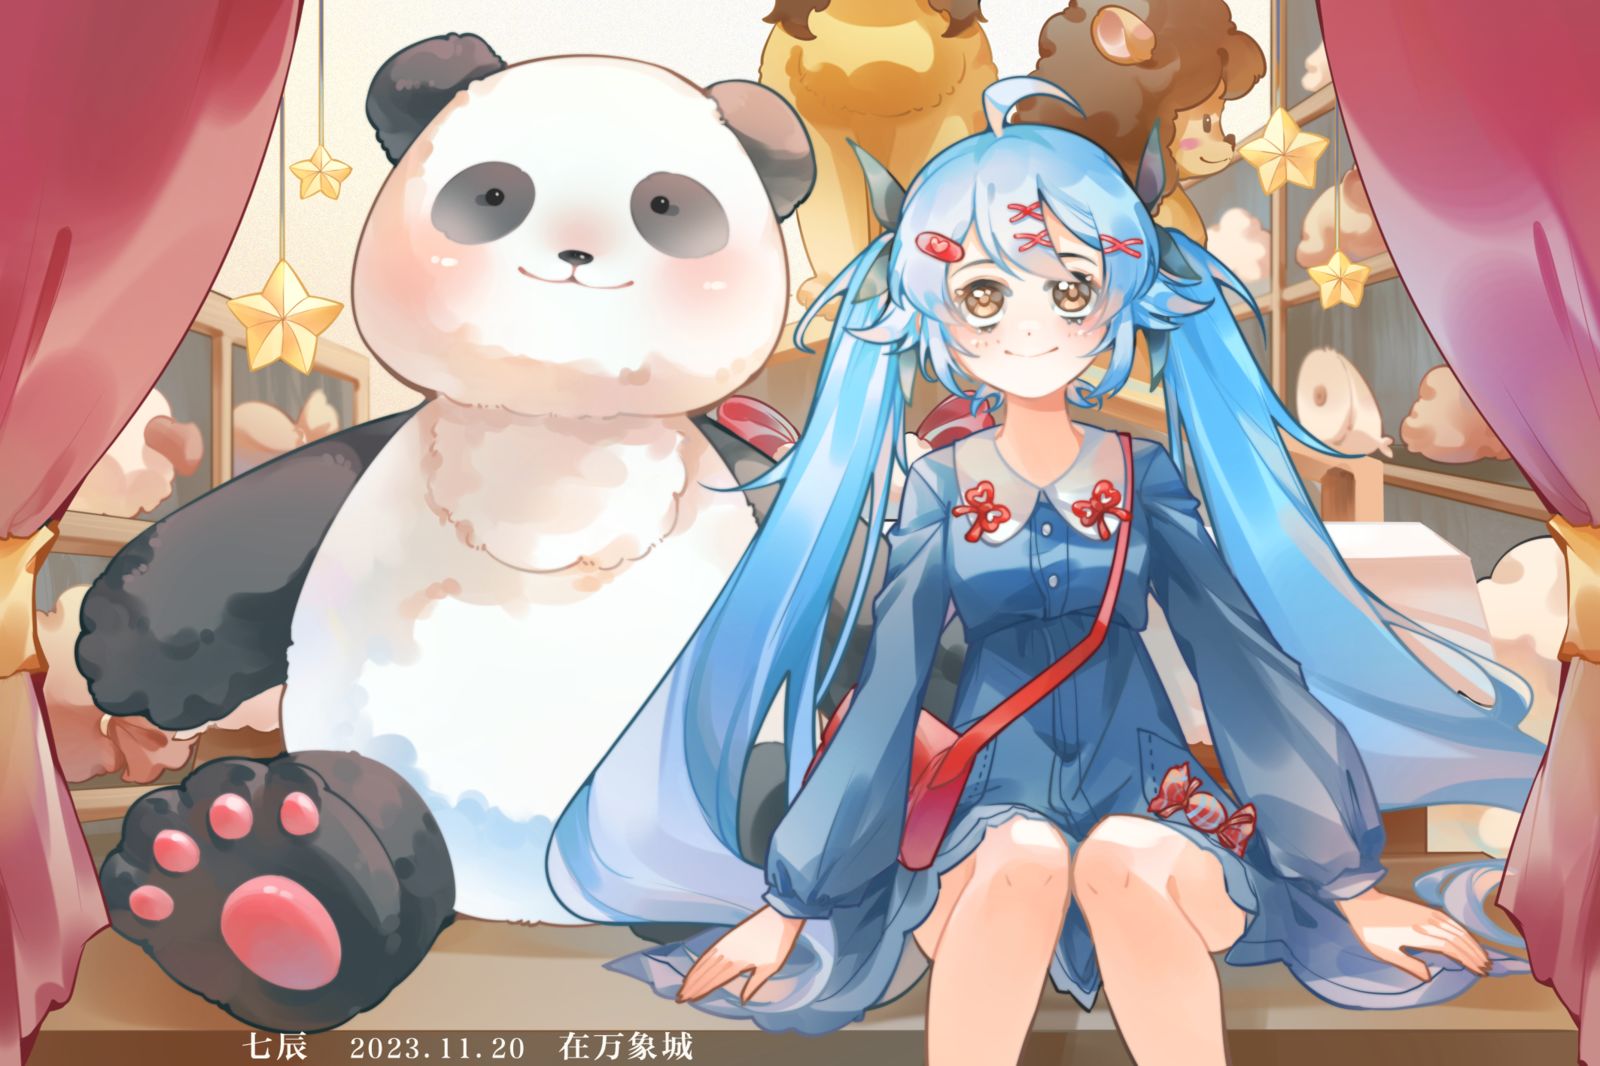 fufu和大熊猫插画图片壁纸